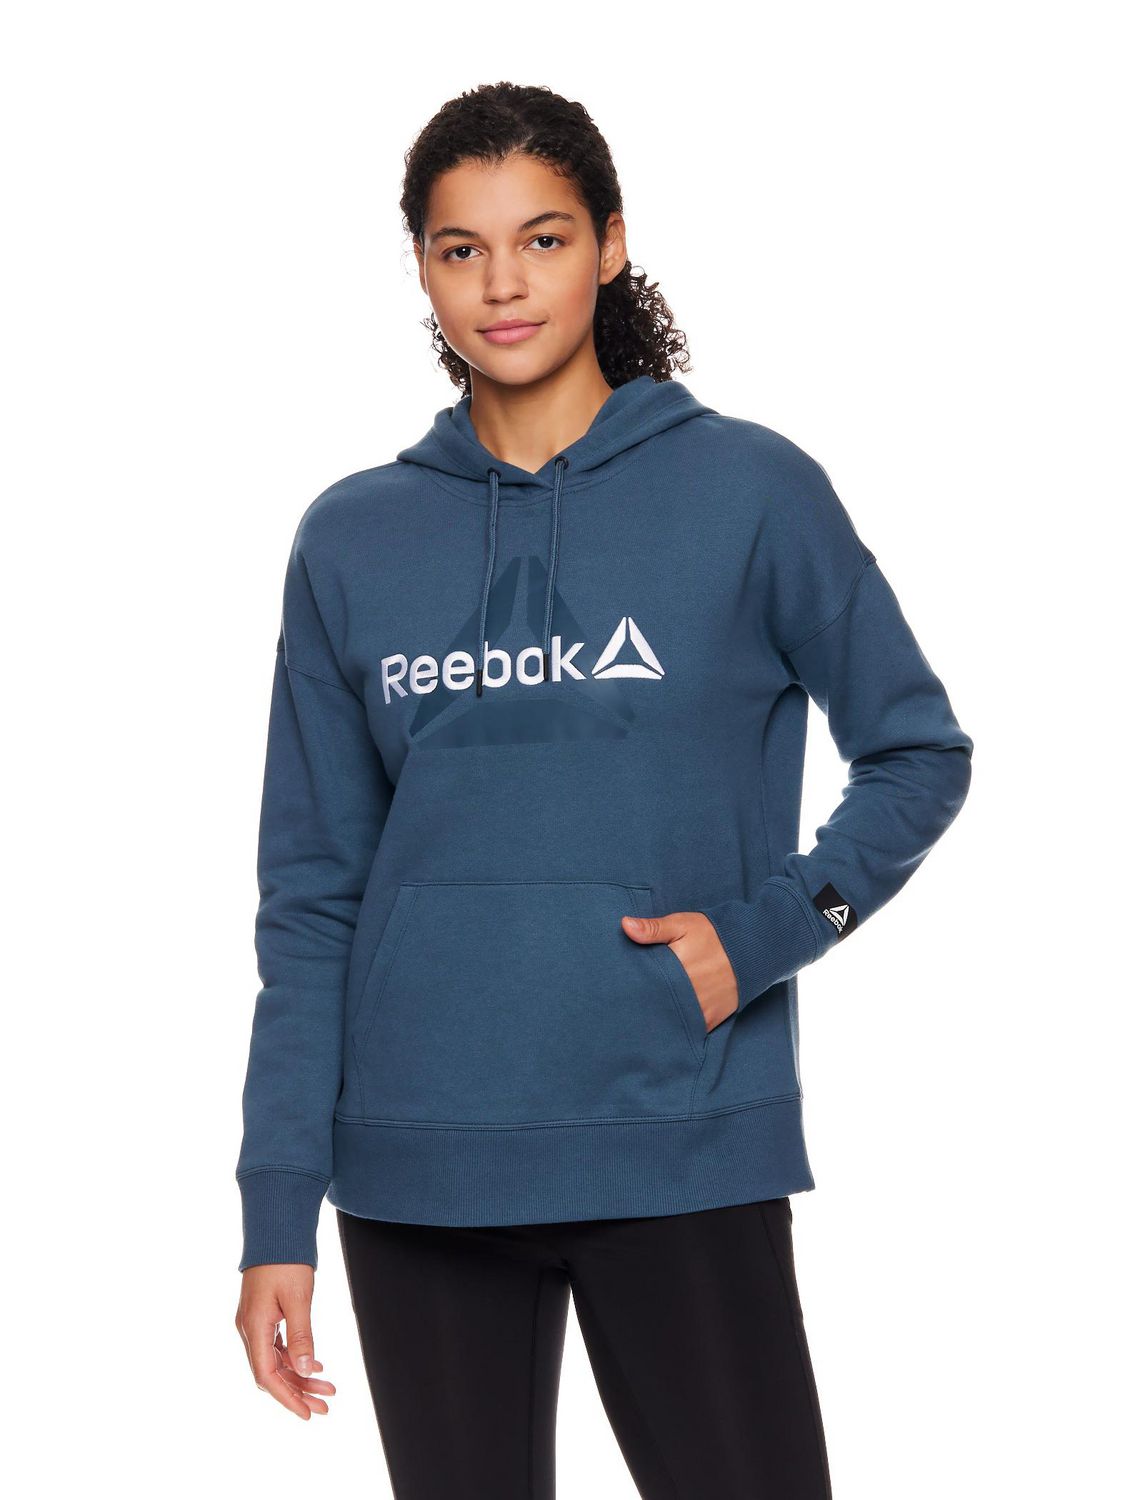 Reebok Women's Active Sweatshirt – Performance Fleece Zip Hoodie